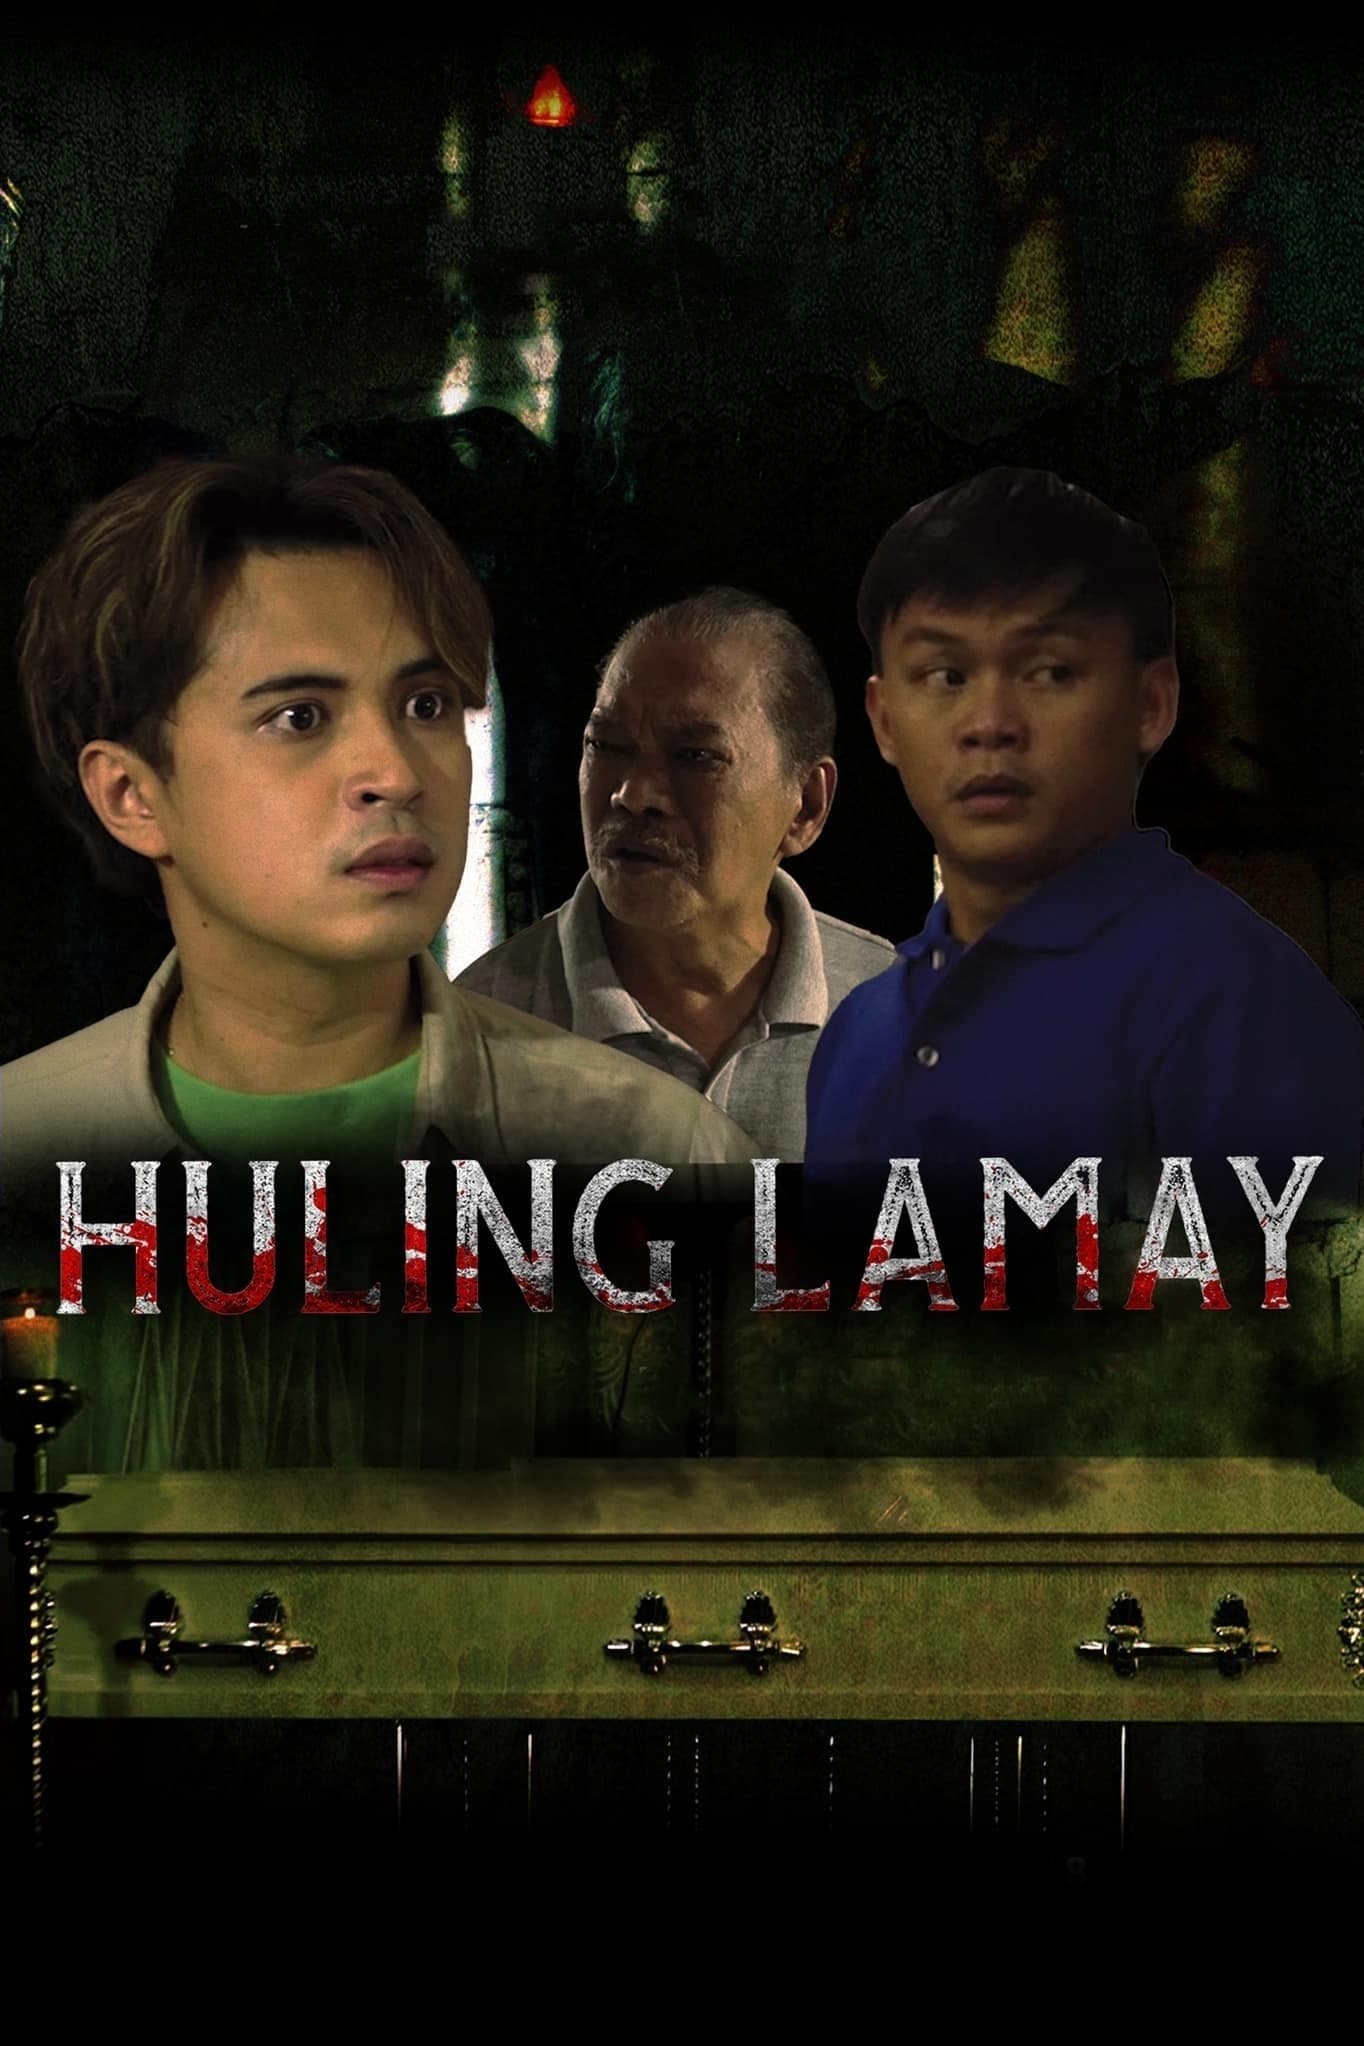 Huling Lamay